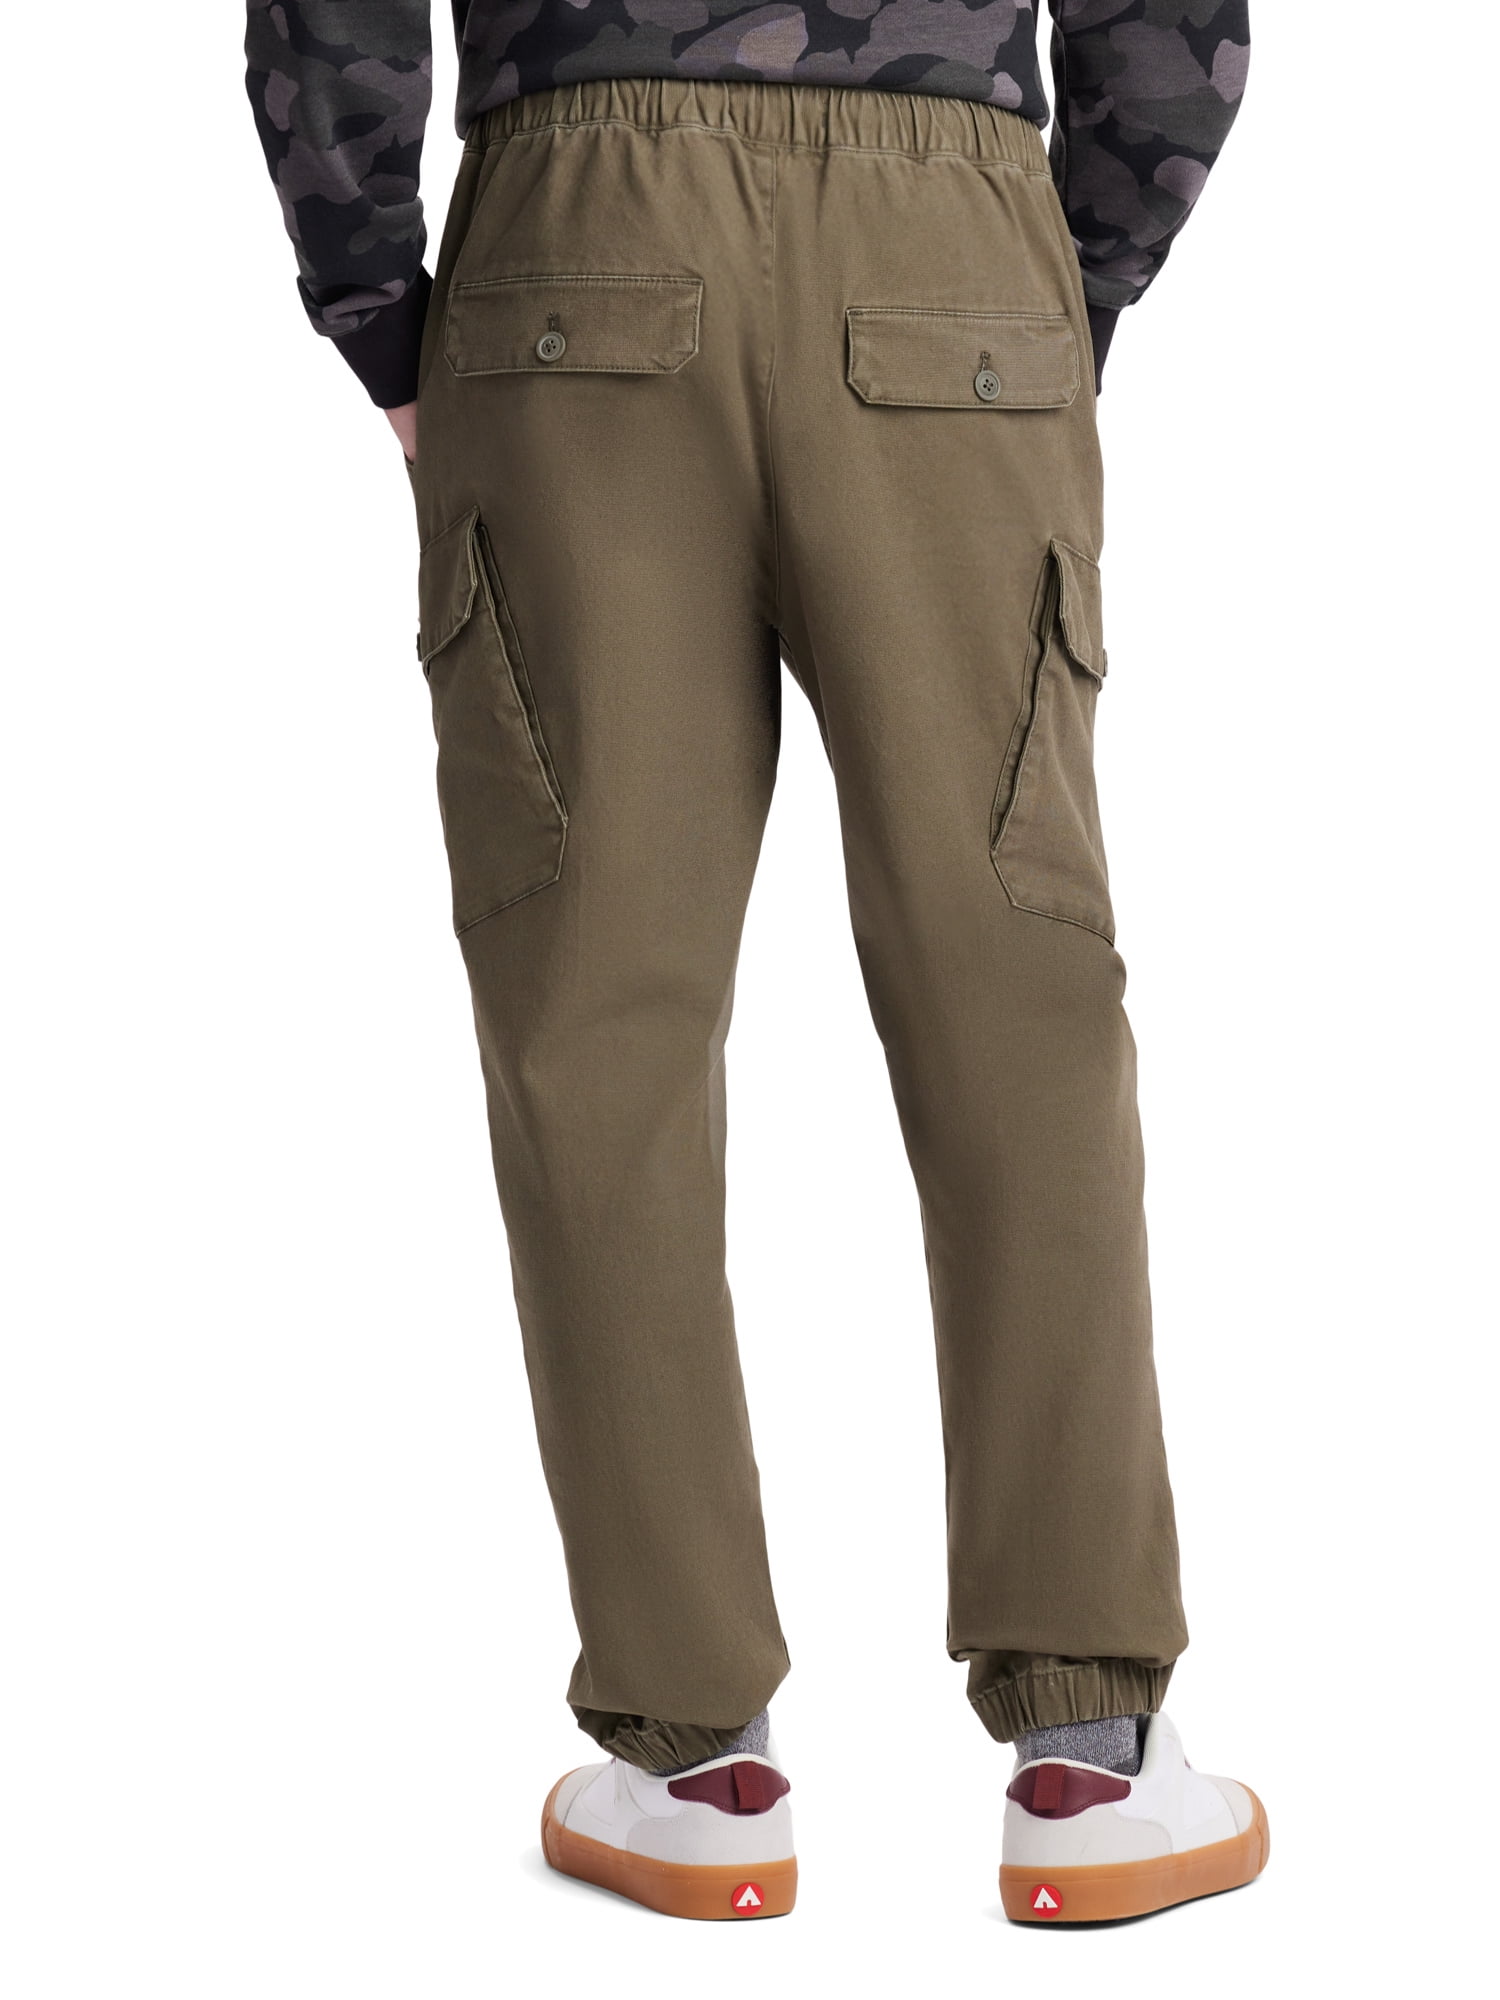 Airwalk Men's & Big Men's Cargo Jogger Pant, Sizes XS-3XL - Walmart.com